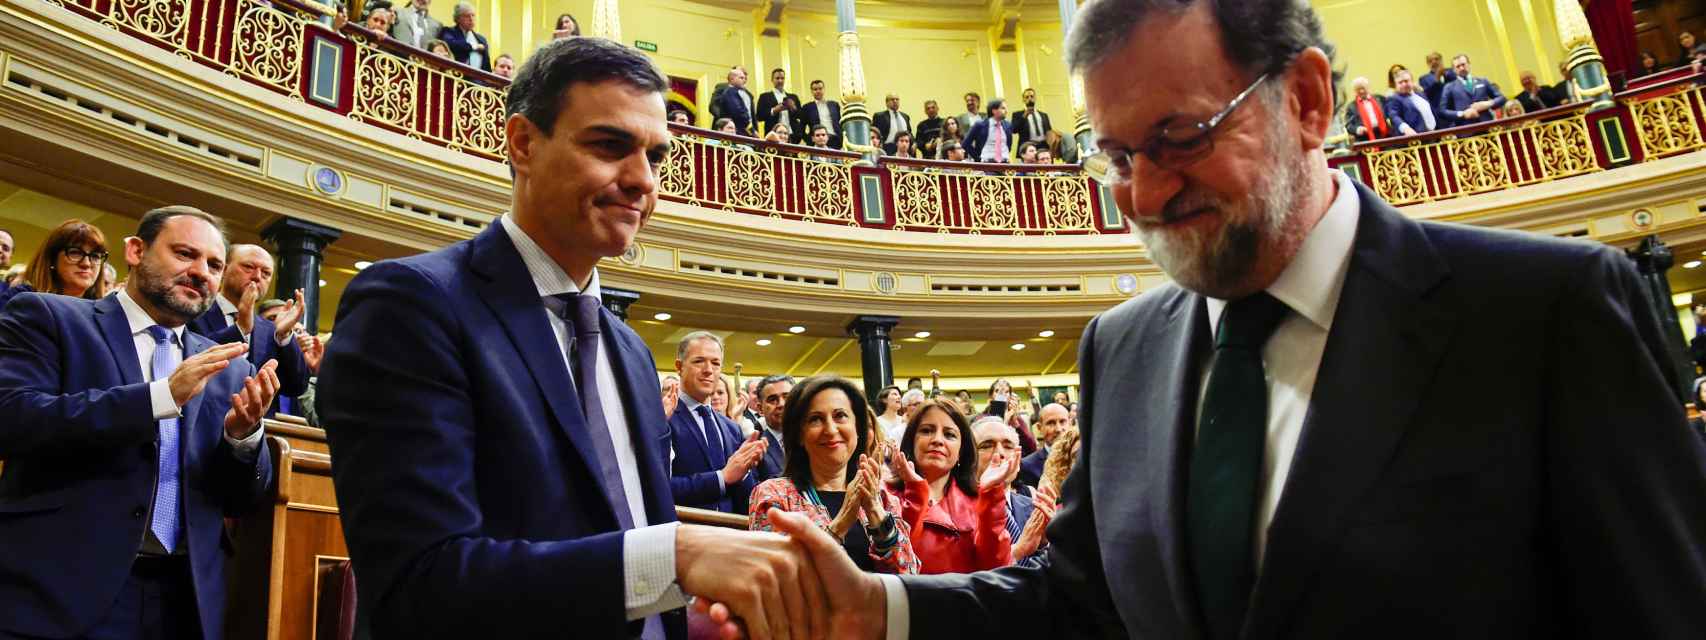 Pedro Sánchez y Mariano Rajoy se dan la mano tras la elección del primero como presidente.